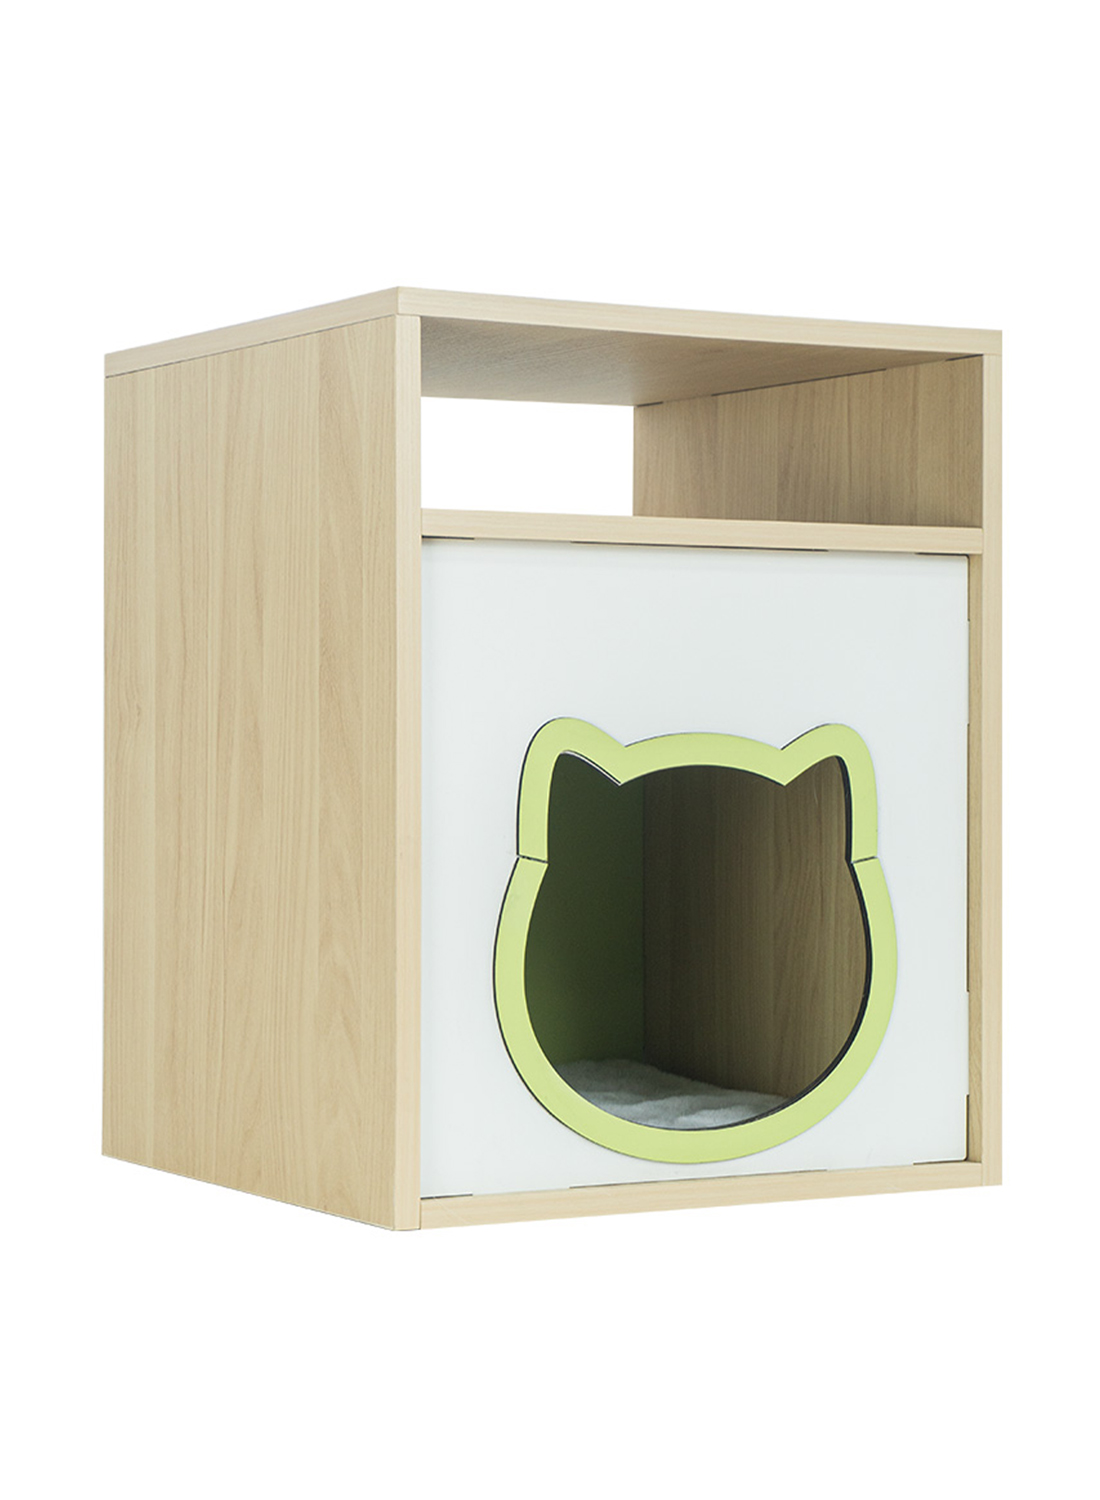 Wooden Cat Kennel Pet Cabinet Square Headboard Bedroom Bedside Pet Cabinet Dog Kennel Living Room Cat